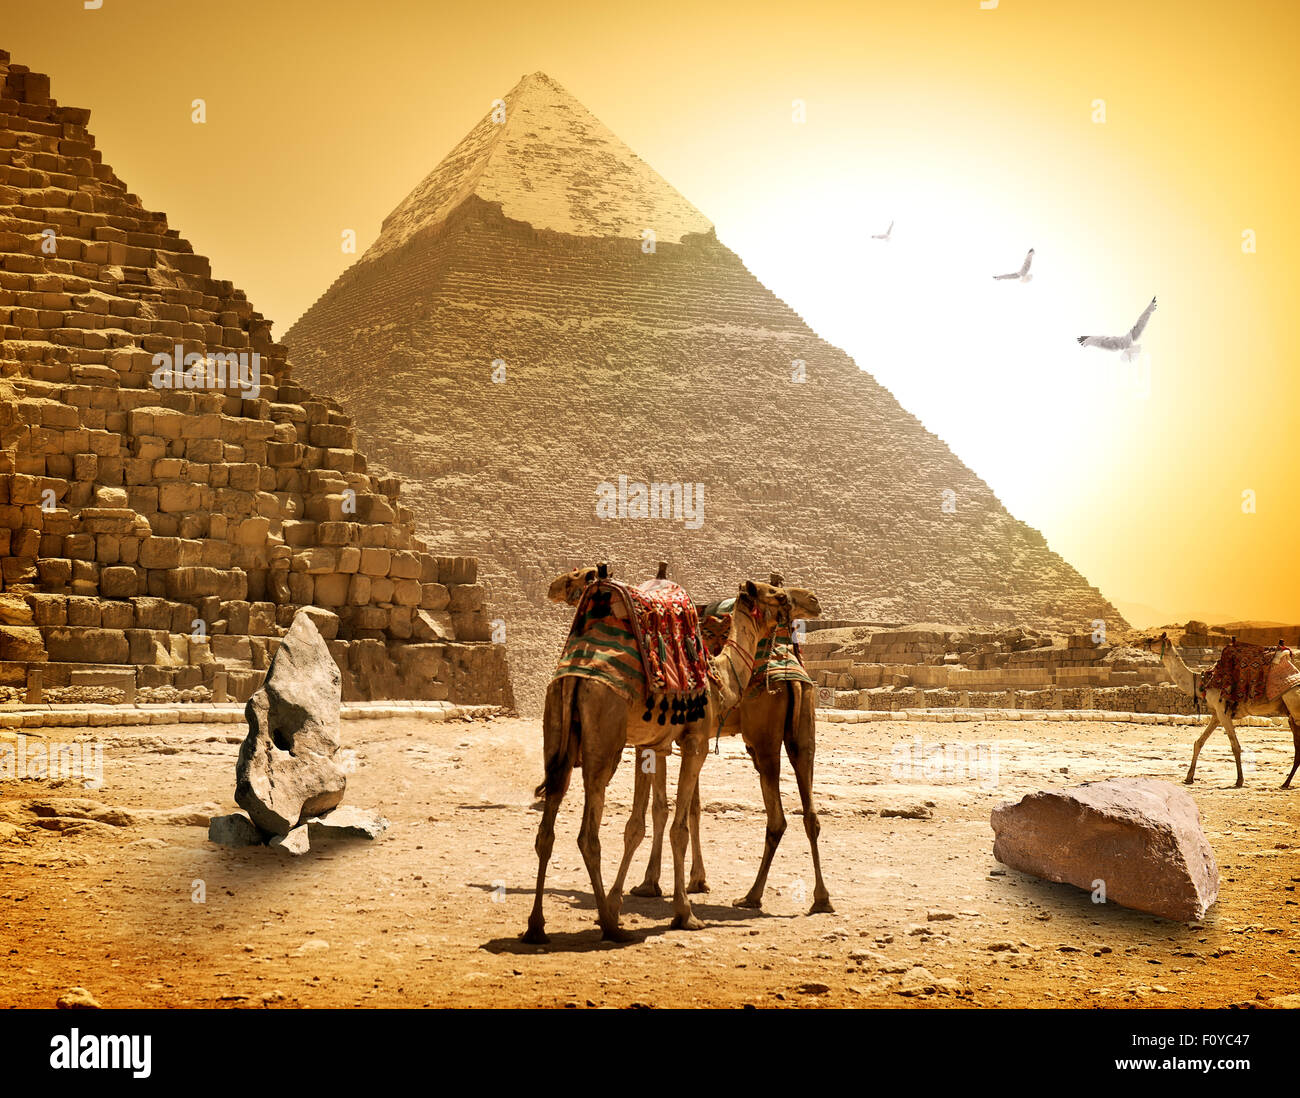 Kamele und Pyramiden am heißen sonnigen Abend Stockfoto